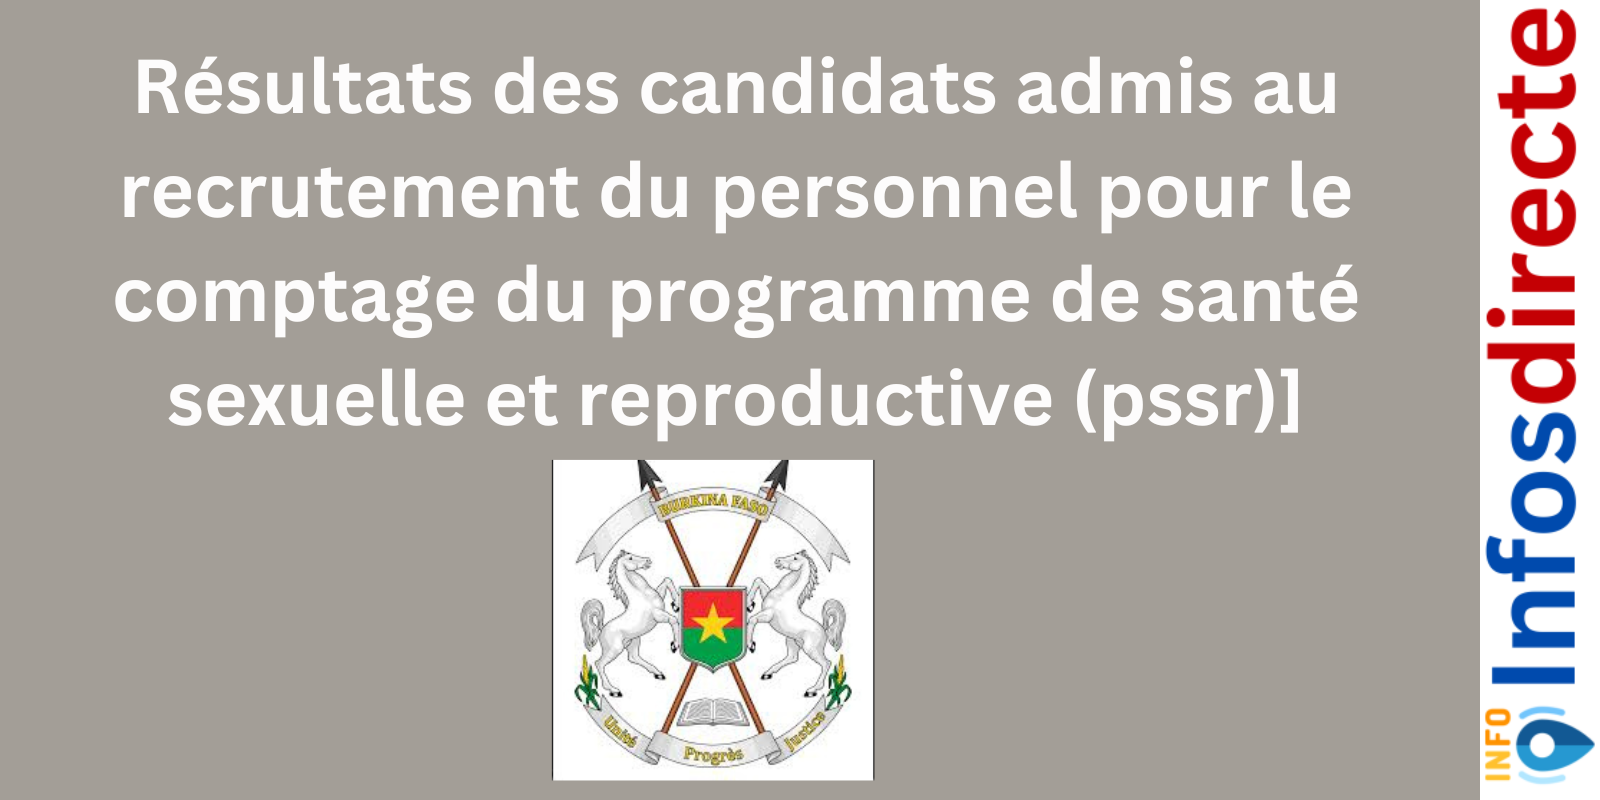 Résultats des candidats admis au recrutement du personnel pour le comptage du programme de santé sexuelle et reproductive (pssr)]